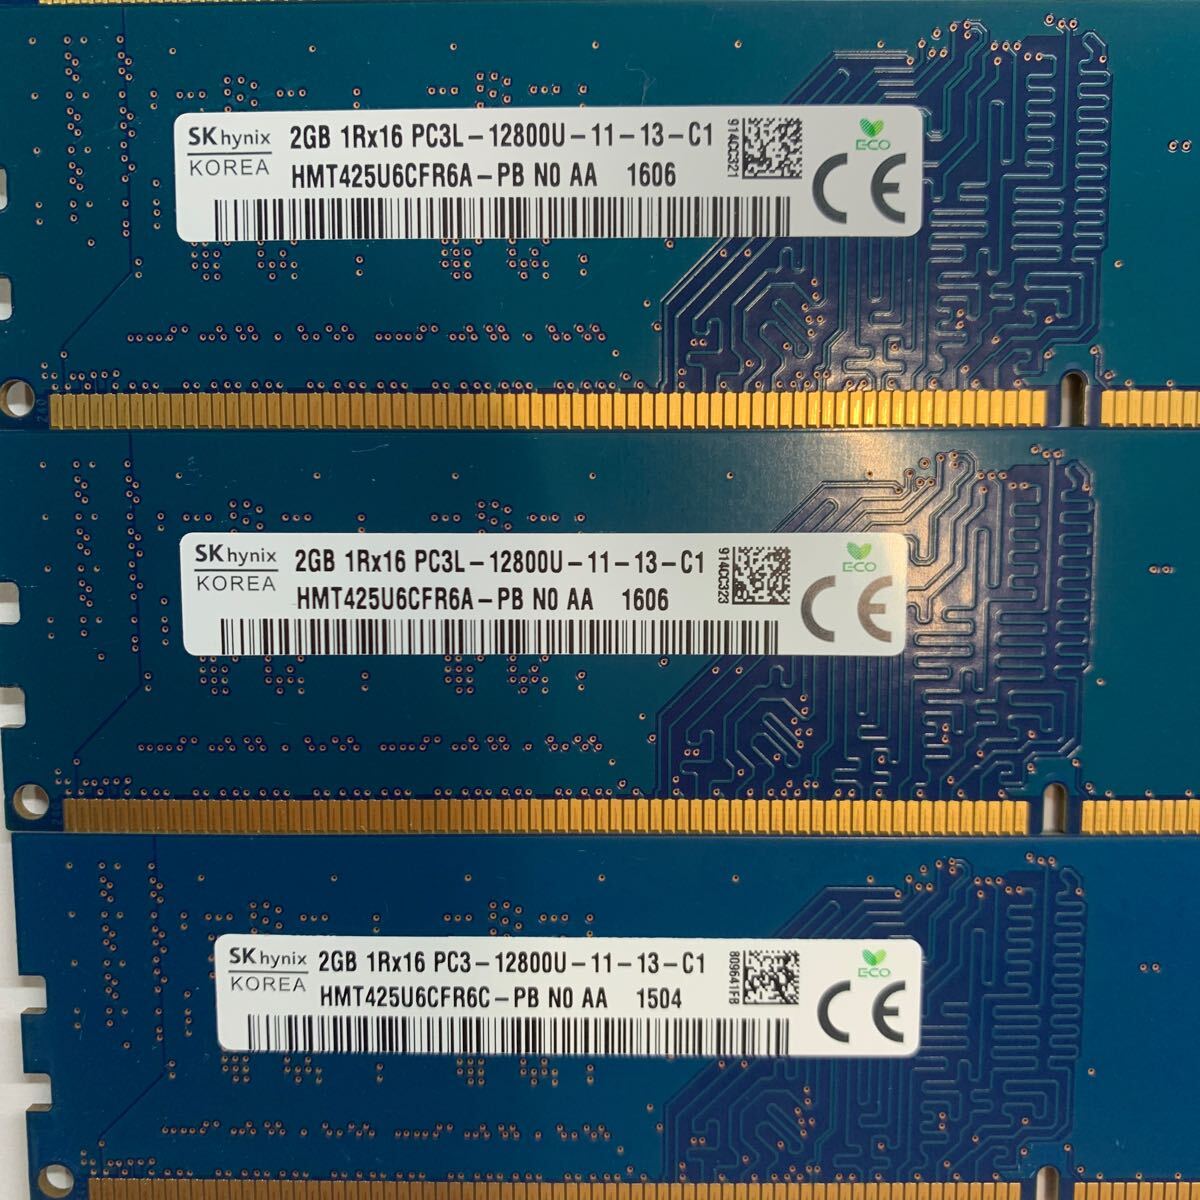 SK HYNIX 1Rx16 PC3L-12800U 2GB 4枚組 1セット DDR3Lデスクトップ用 メモリ DDR3L- 1600 2GB x 4枚で DESKTOP RAM 超美品 保証付き_画像2